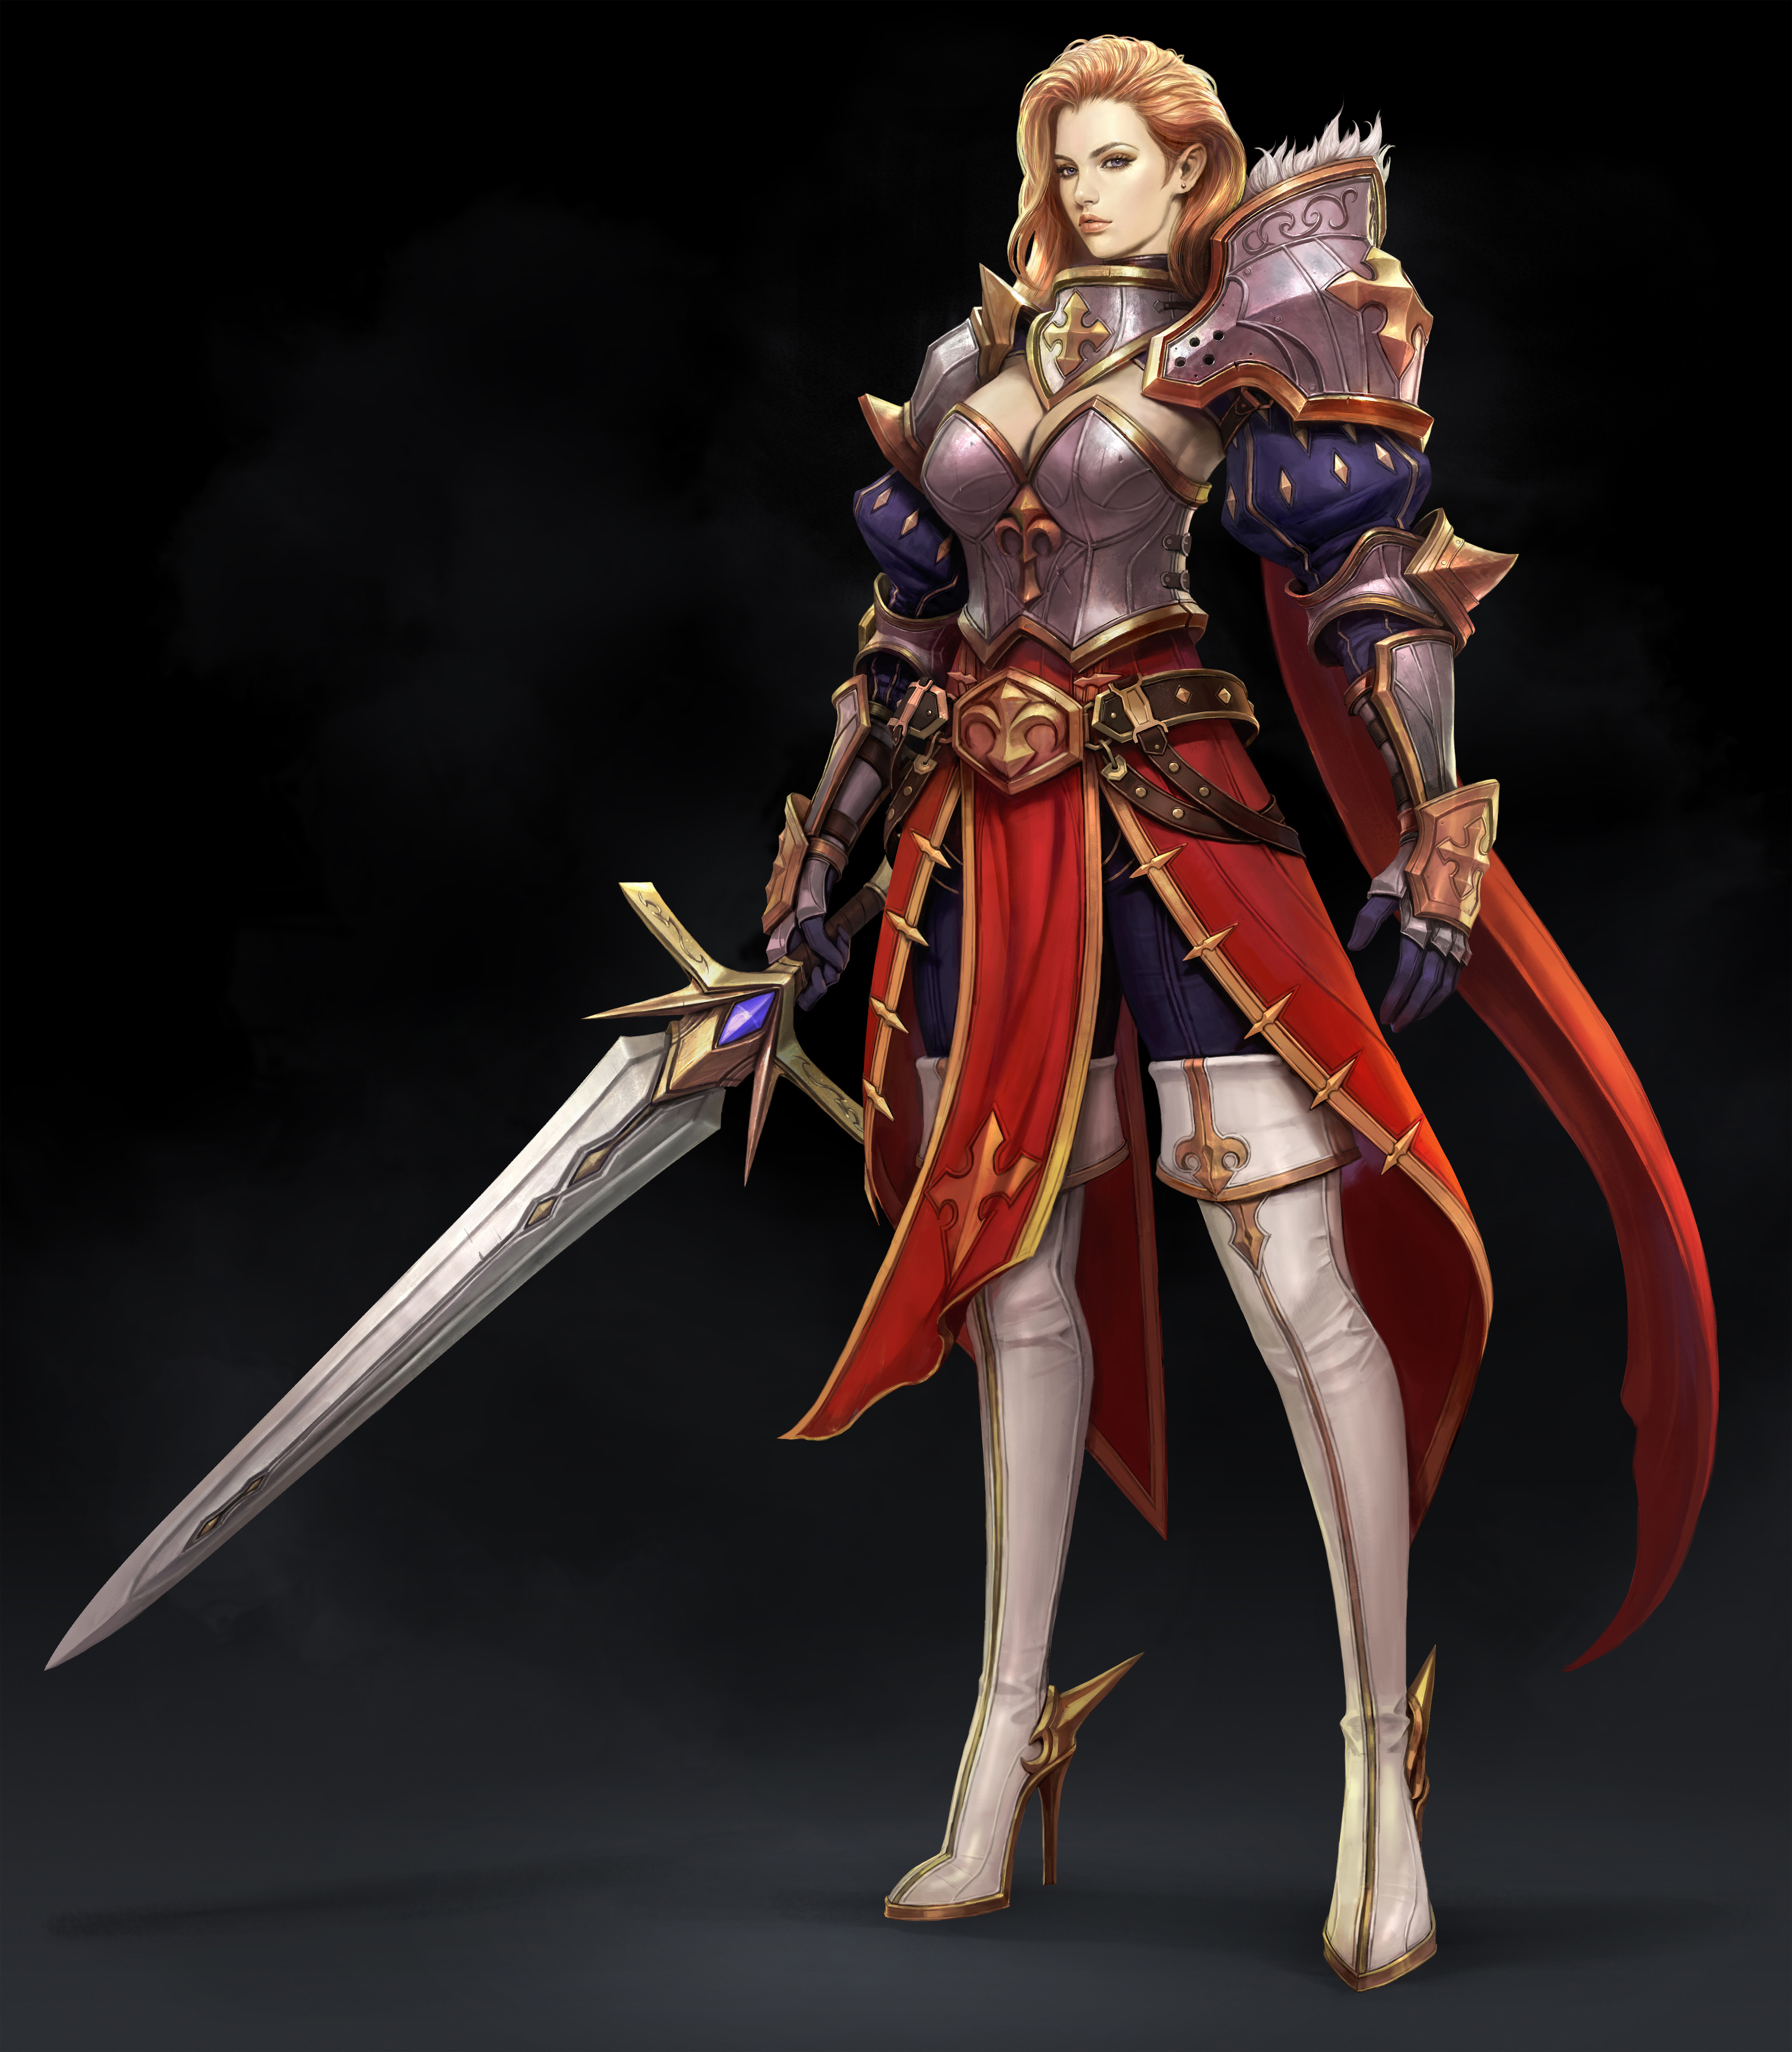 ArtStation - Female Medieval Armor